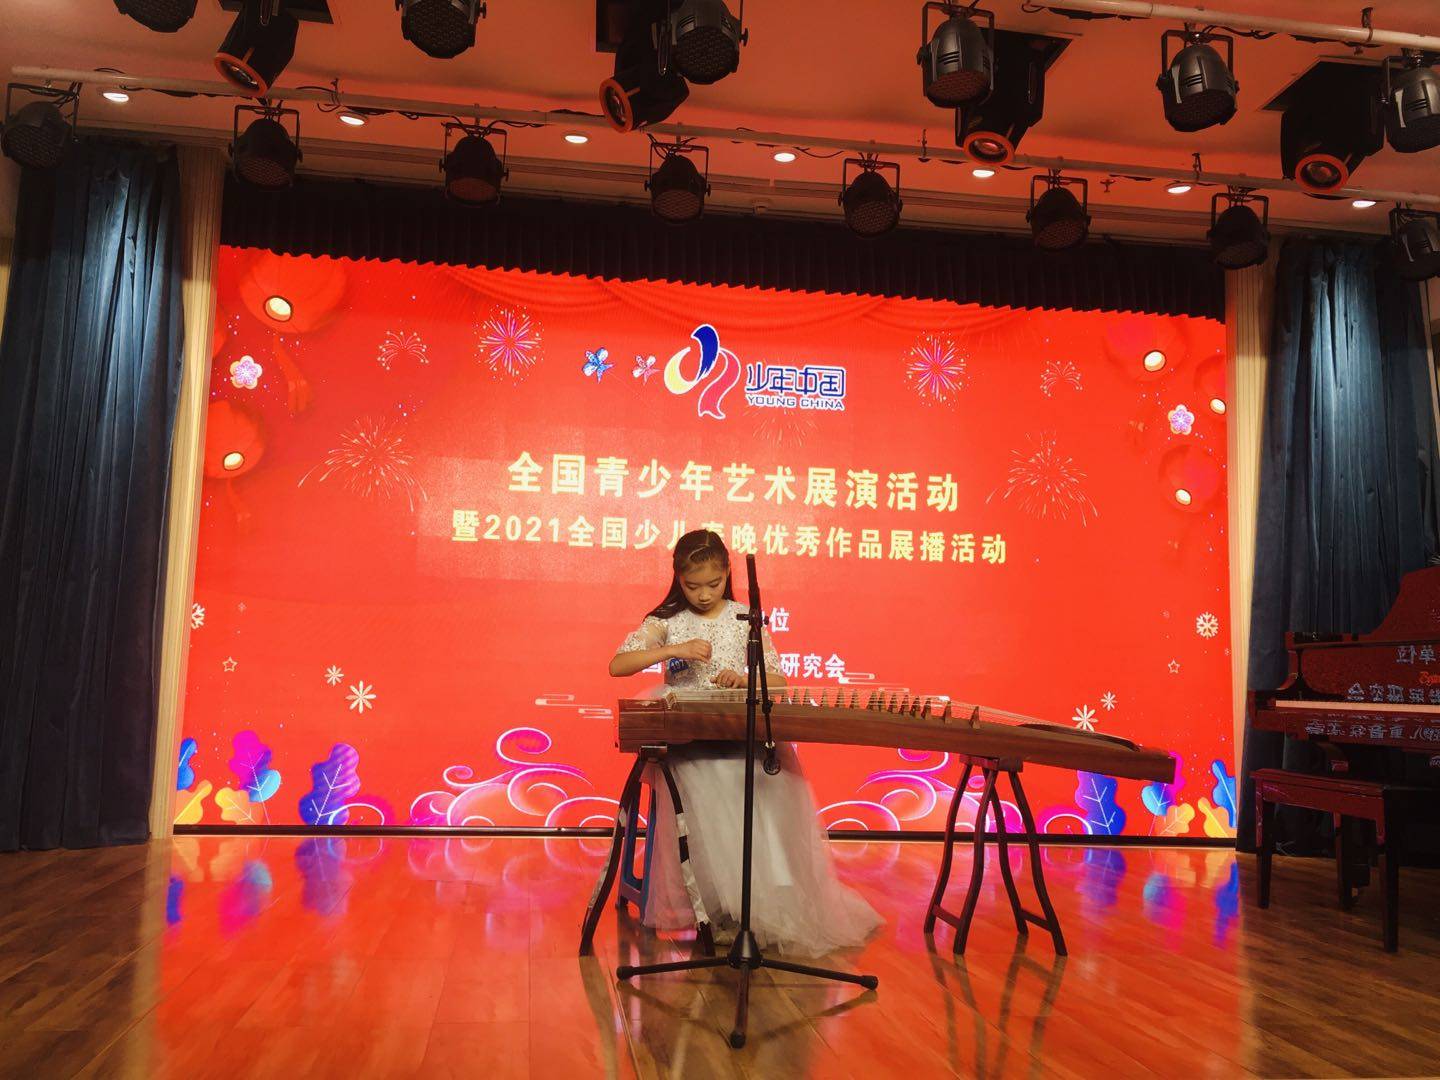 少年中国-山东济南艺术展演活动在线直播-上山传媒-上山传媒